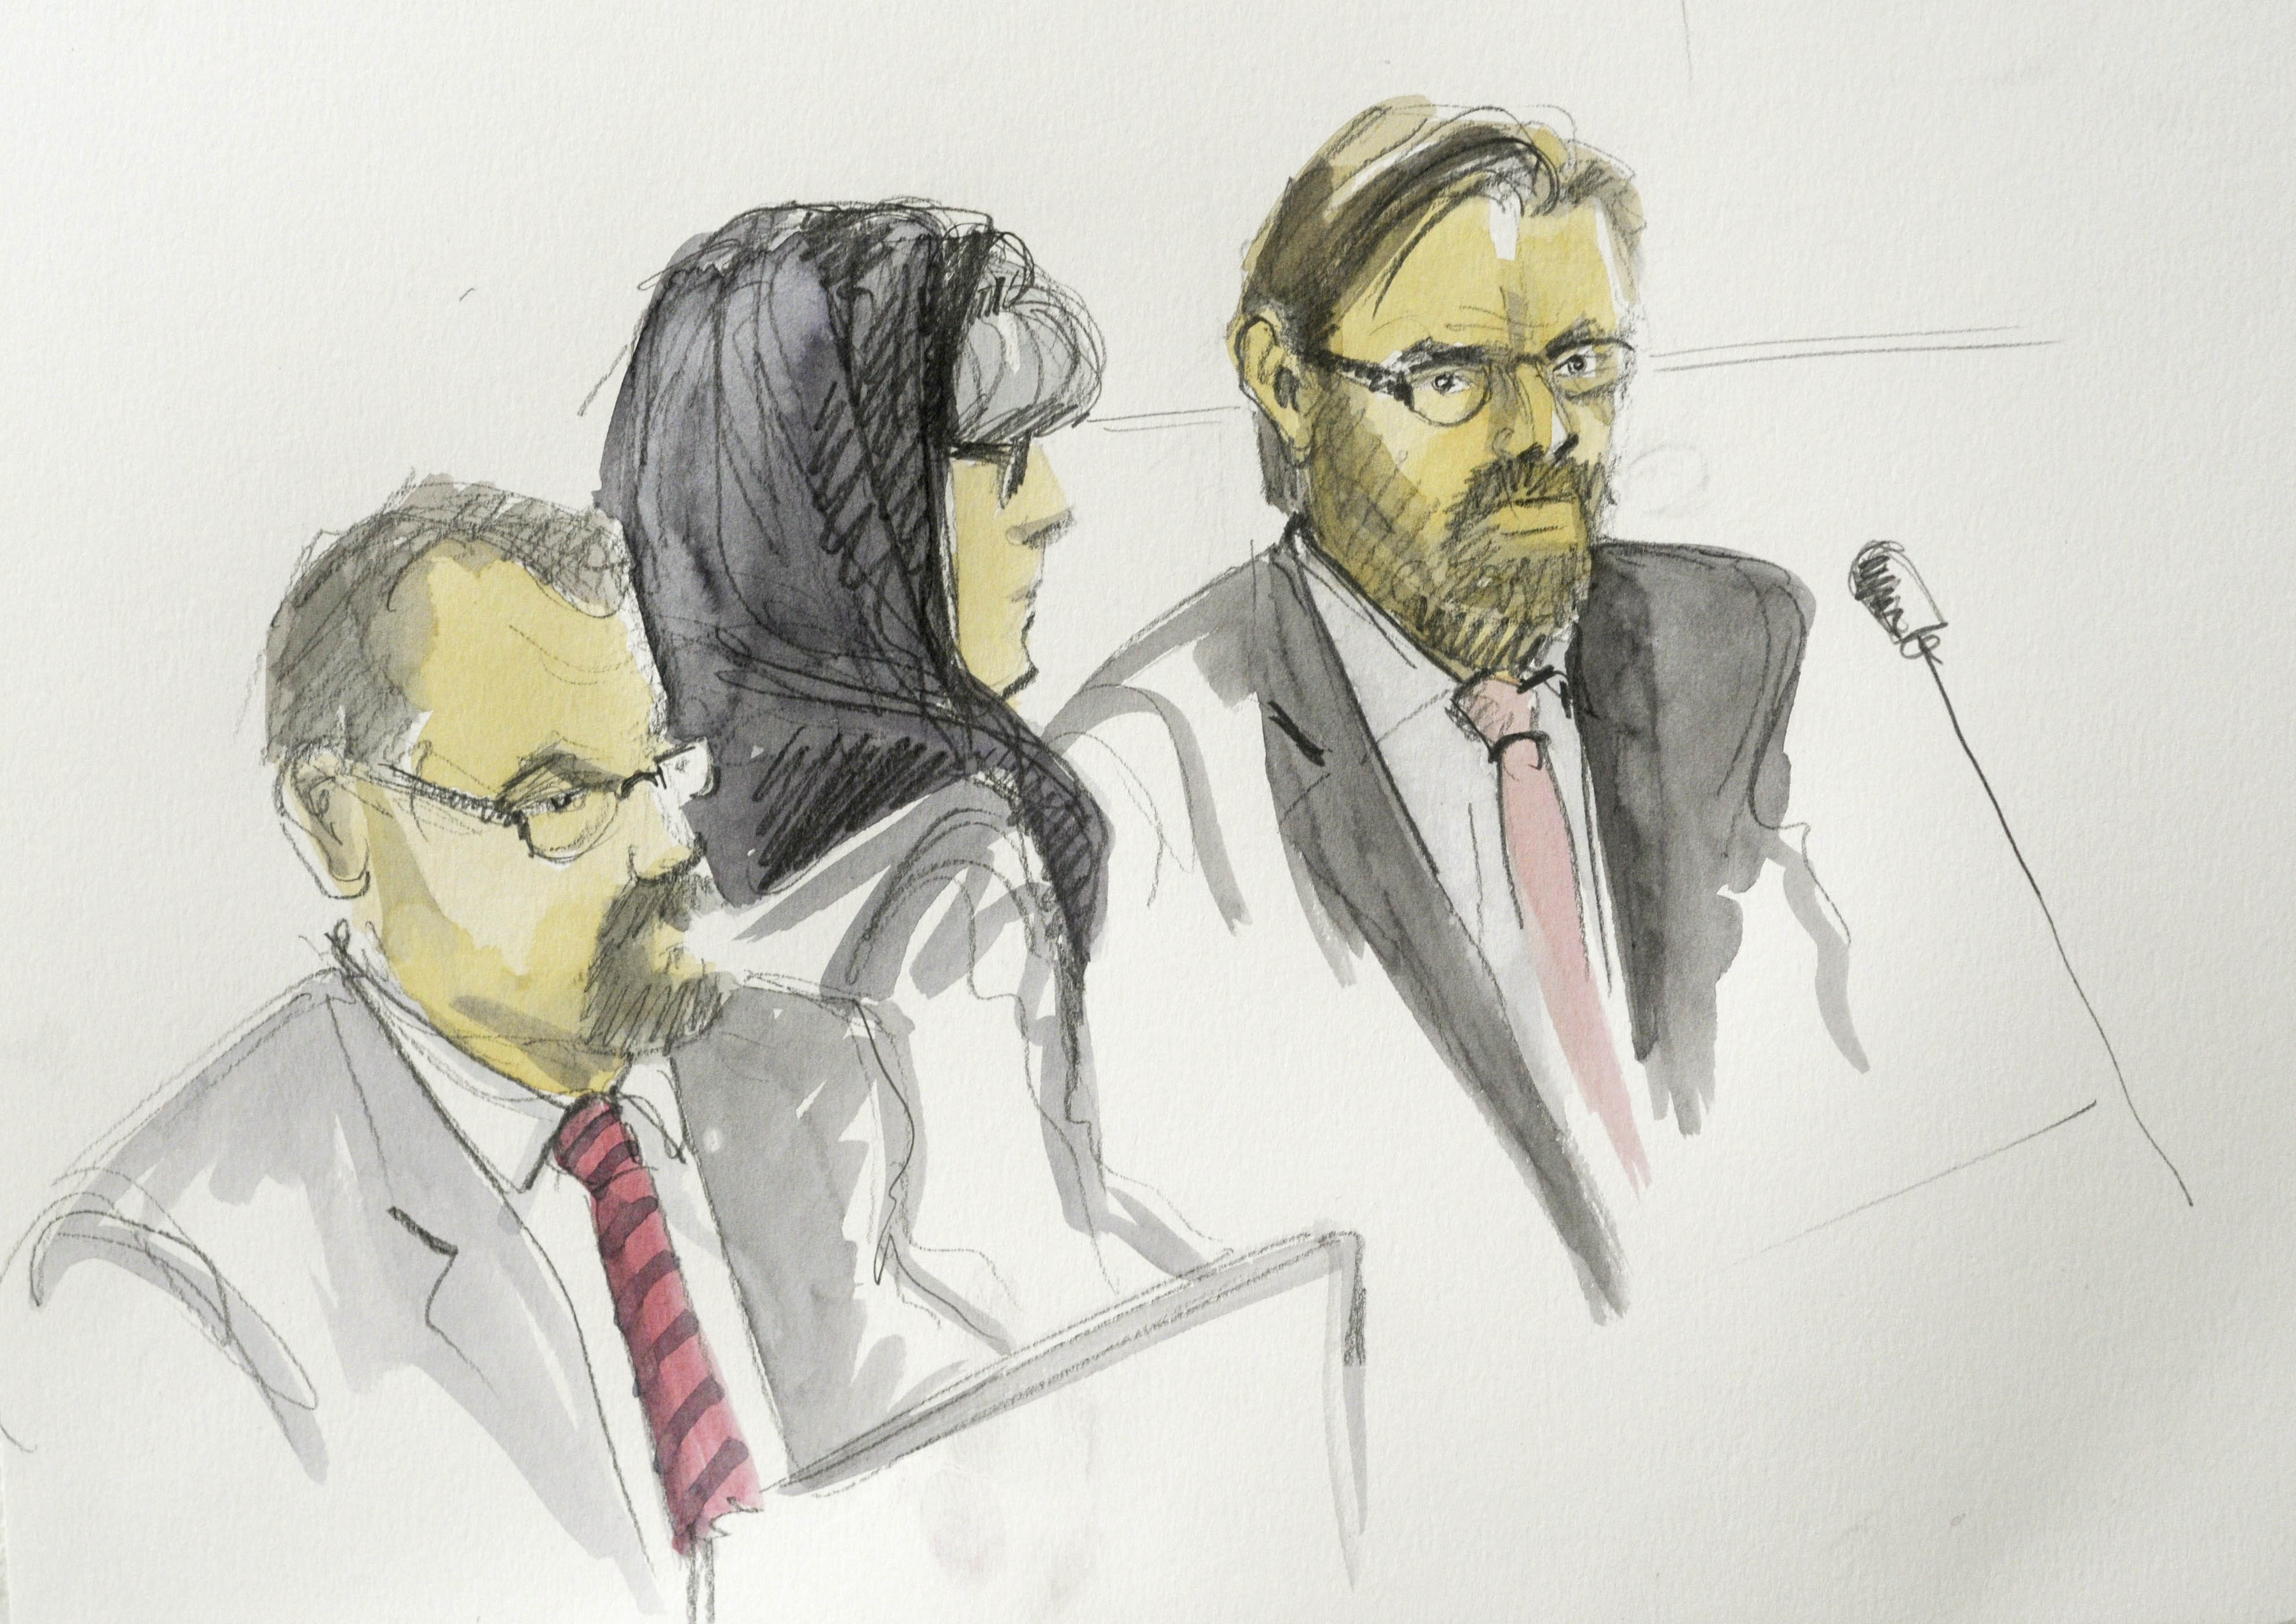 Barnläkaren i sjal och advokat Björn Hurtig till höger, nedtecknade under rättegången.